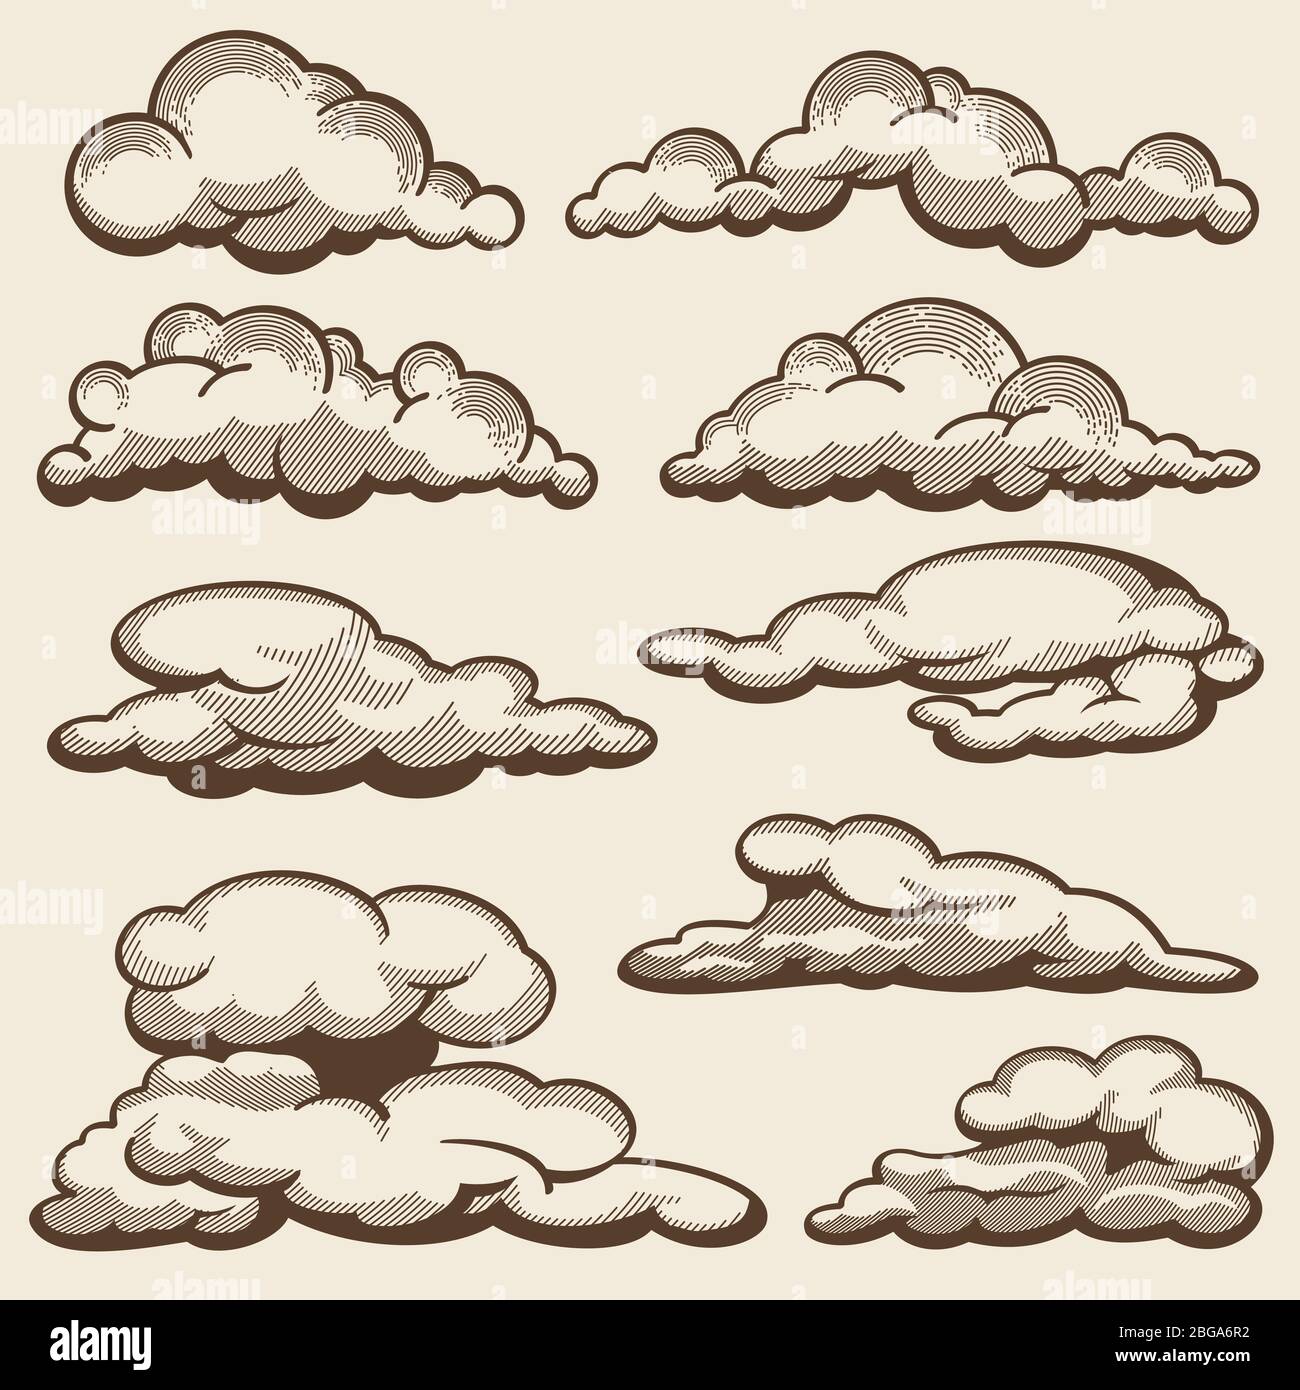 Handgezeichnete Wolken im Vintage-Stil Vektor-Set. Wolke Skizze flauschig, Vintage Zeichnung Kritzelzeichnung Illustration Stock Vektor